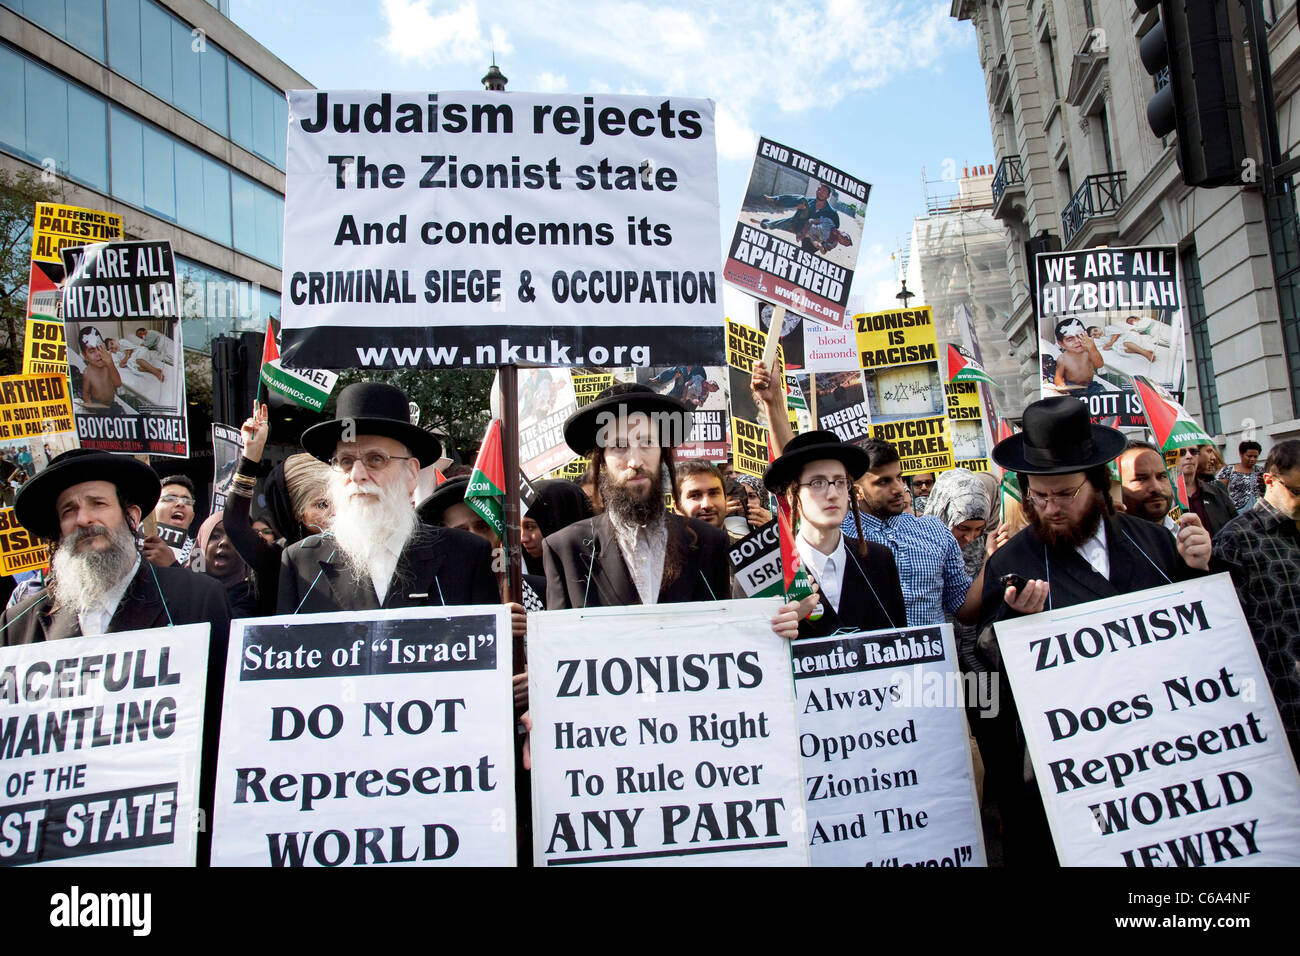 judios-ortodoxos-contra-el-sionismo-israeli-manifestacion-en-londres-los-judios-protestan-contra-la-ocupacion-de-palestina-y-una-cerrada-c6a4nf.jpg